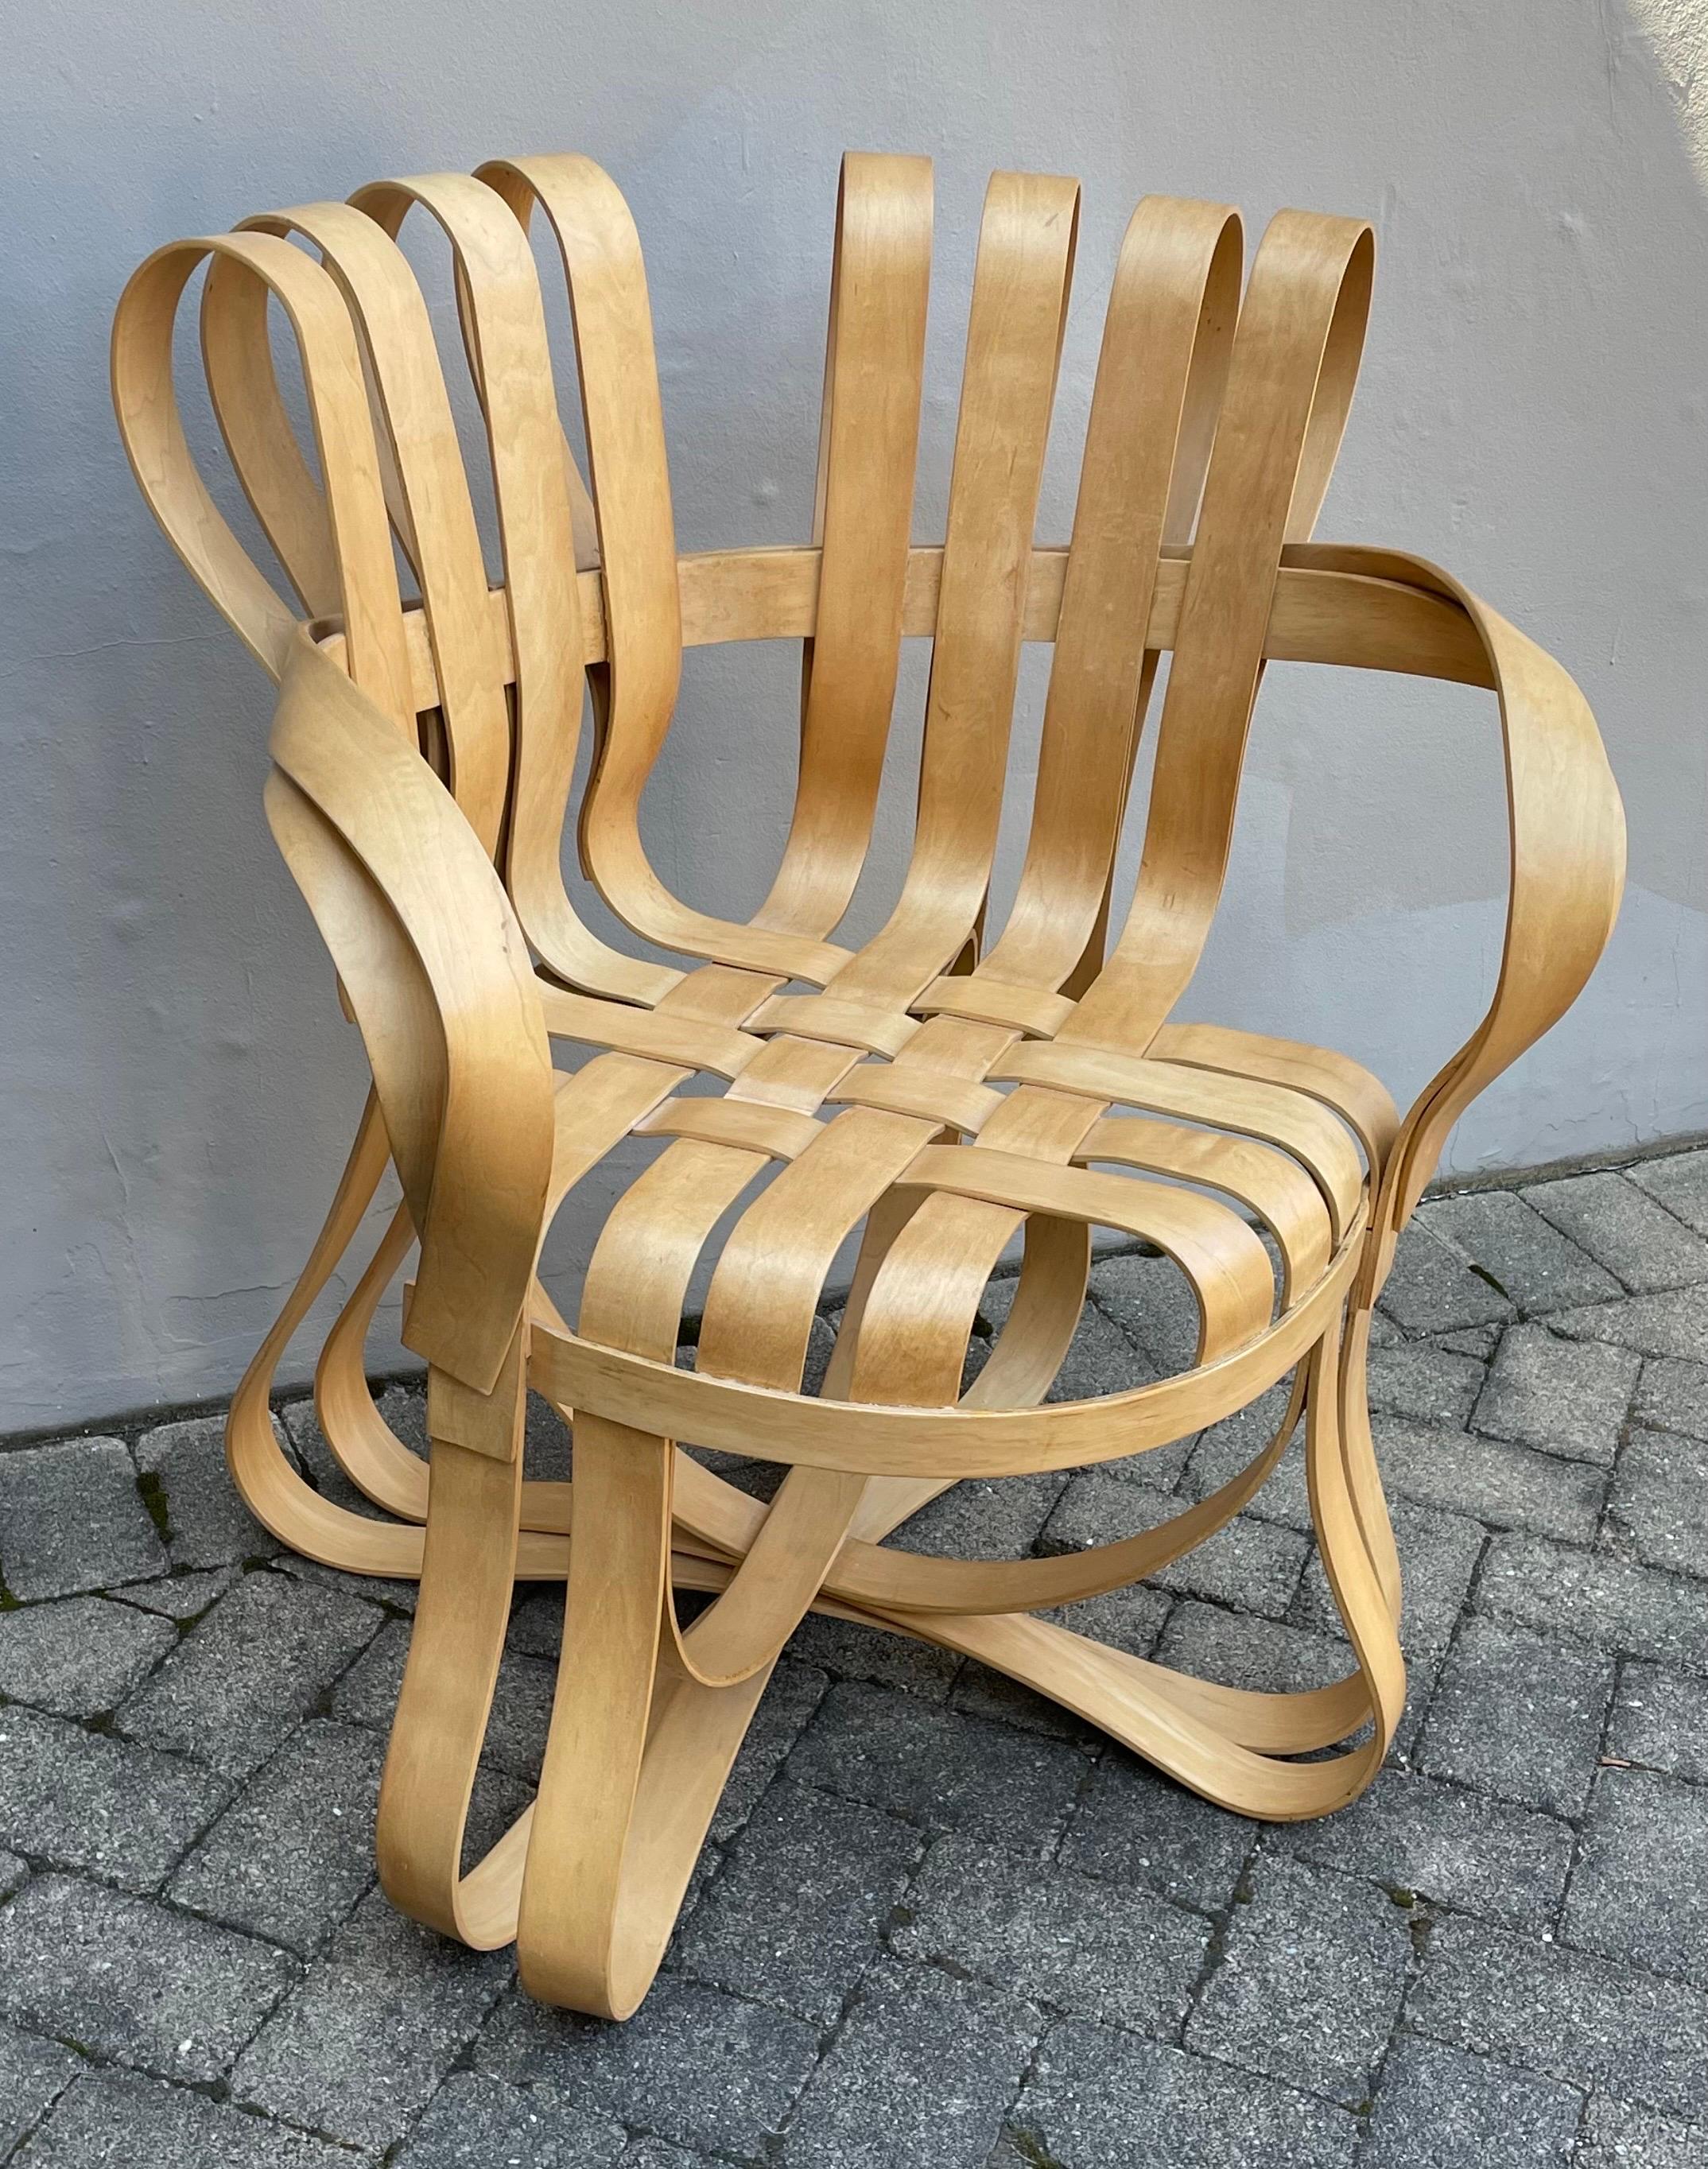 Inspiriert von den Apfelkisten, auf denen er als Kind gespielt hatte, entwarf der mit dem Pritzker-Preis ausgezeichnete Architekt Frank Gehry das bandartige Design des Cross Check Stuhls mit ineinander verwobenen Ahornstreifen. Das anmutige Design